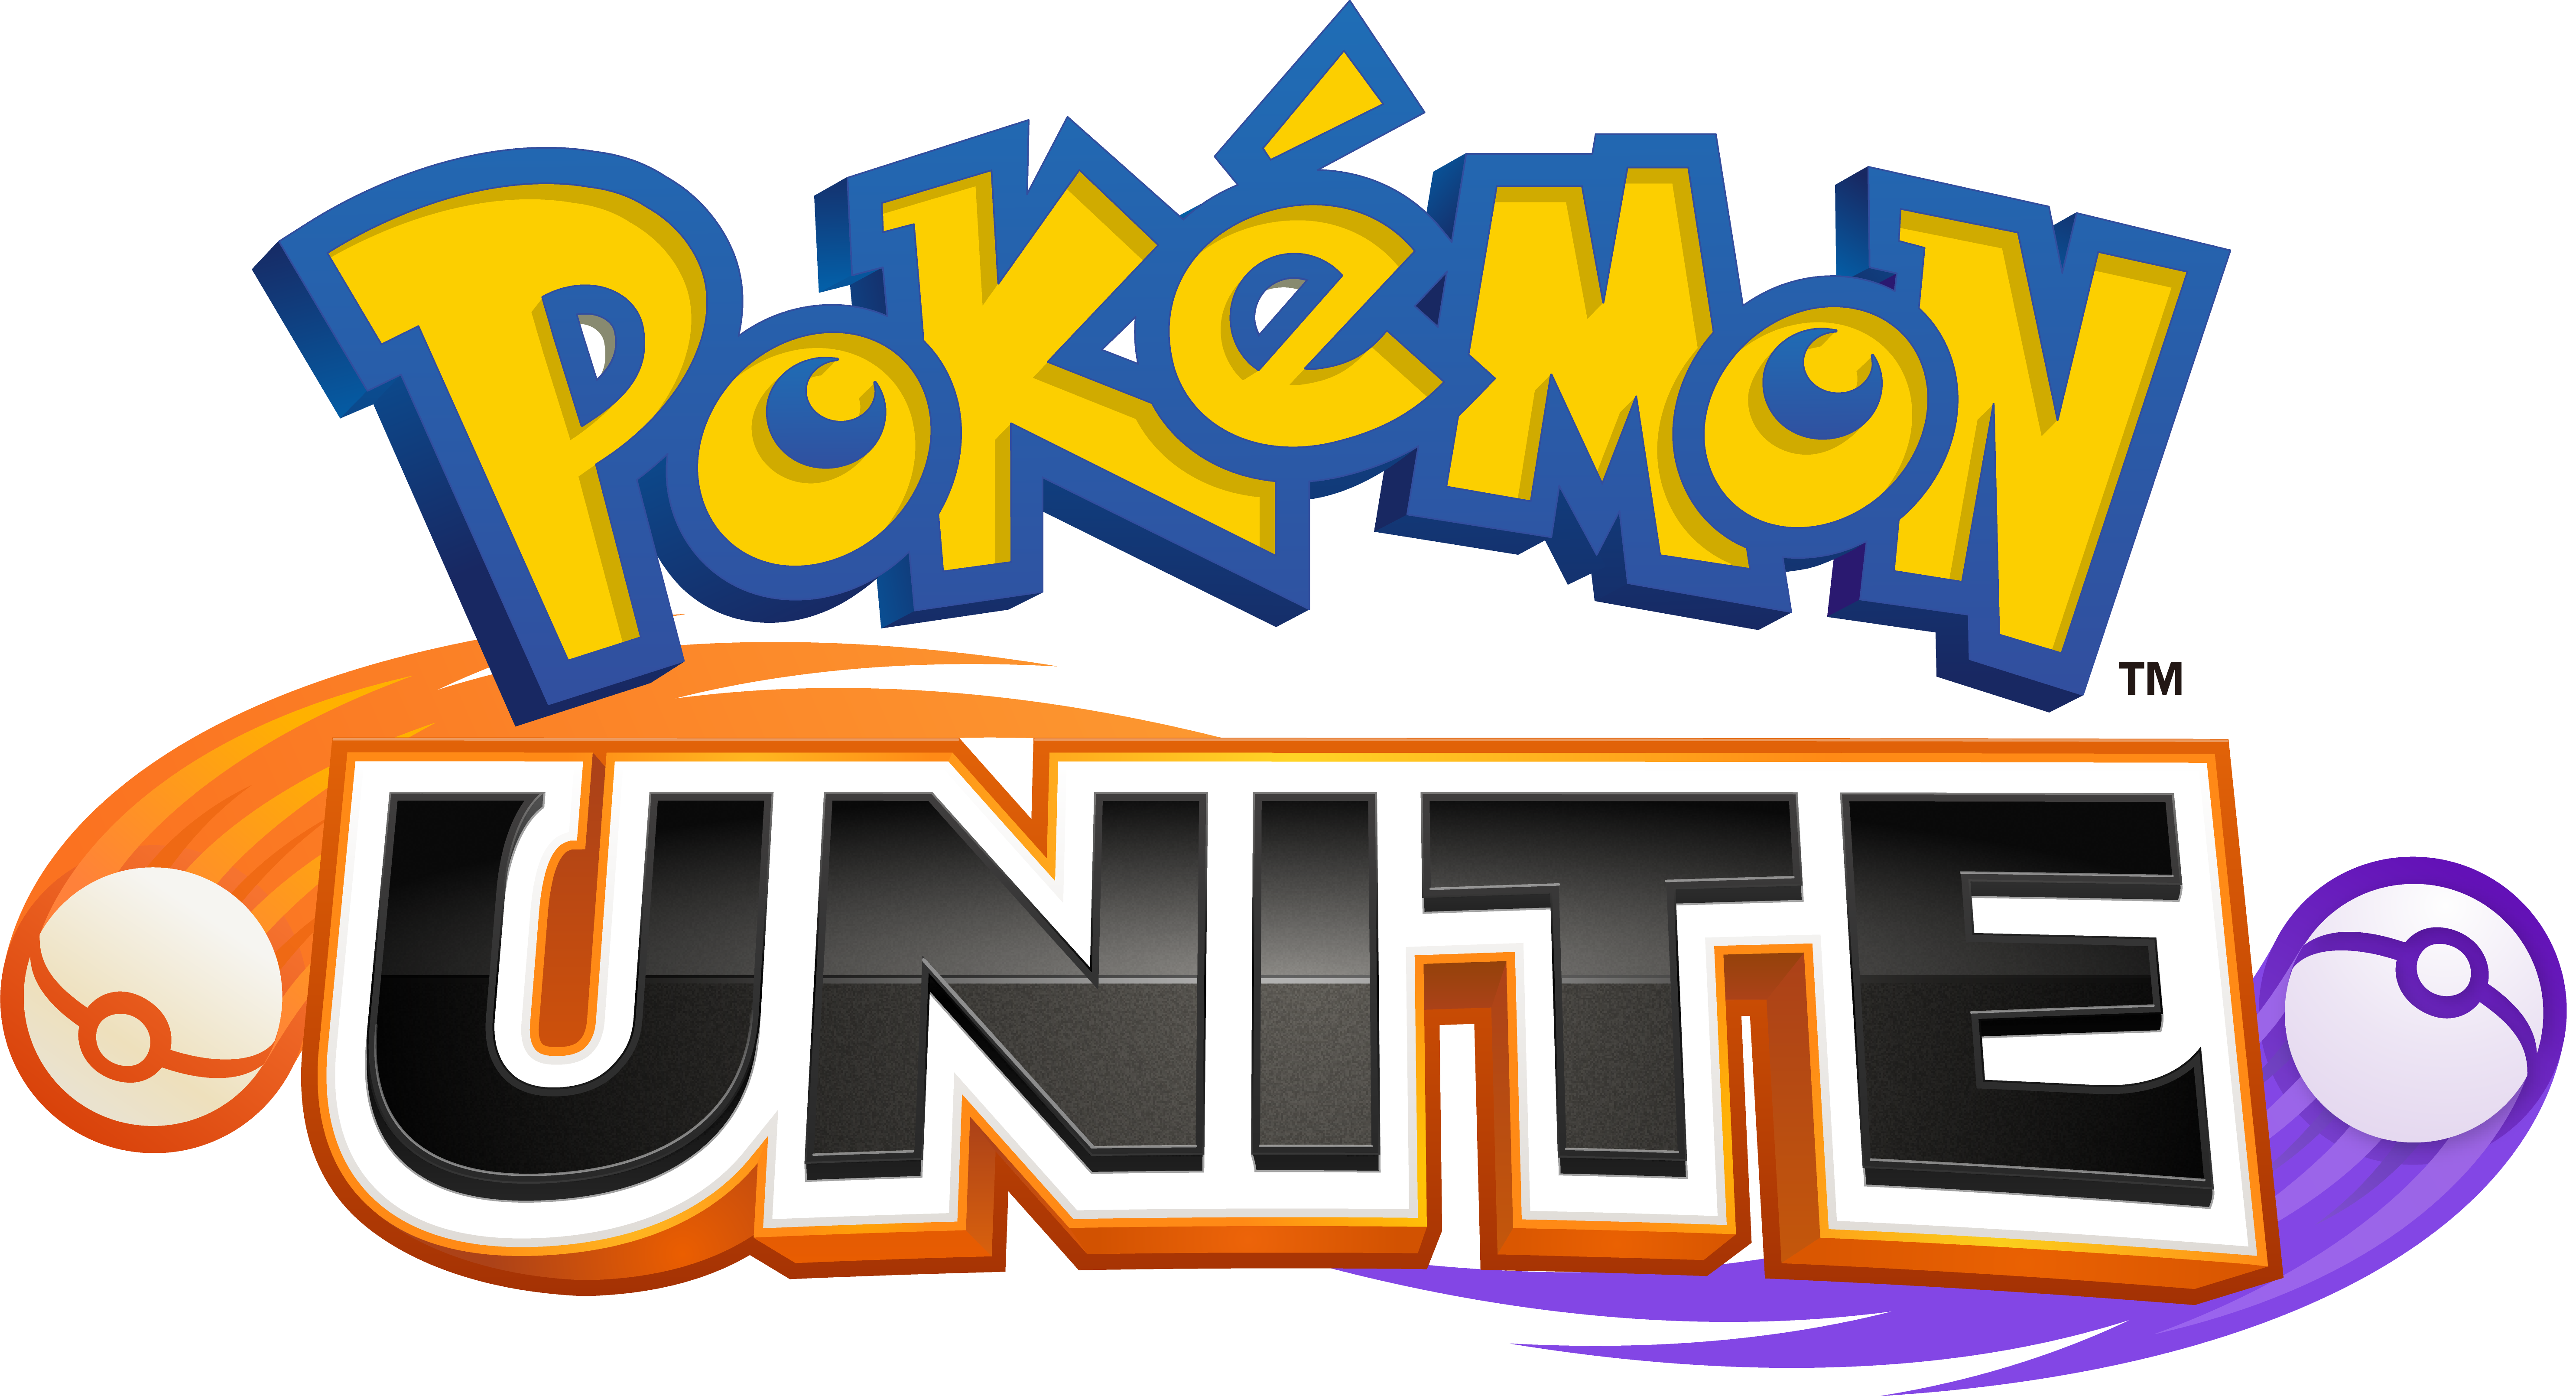 Gardevoir Chega em Pokémon Unite Amanhã (28/07)